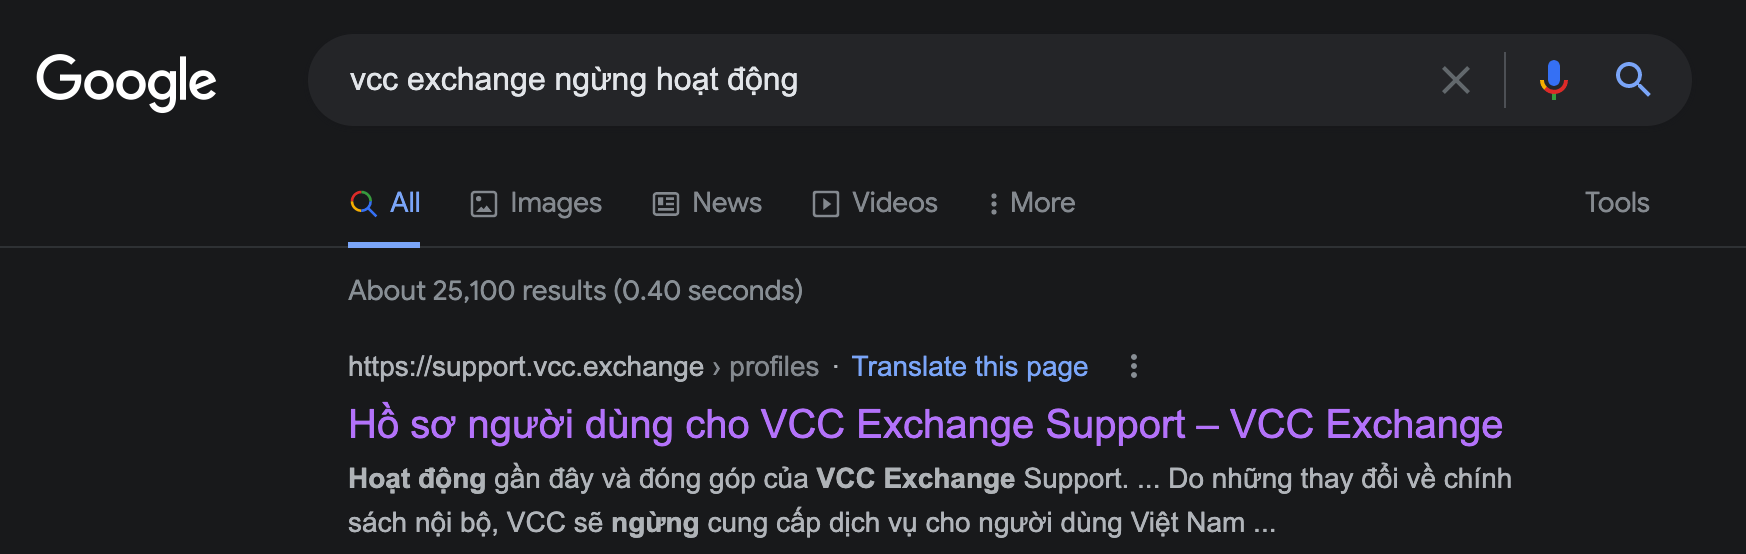 Vì sao sàn giao dịch VCC Exchange lại ngừng cung cấp dịch vụ cho người dùng Việt Nam?